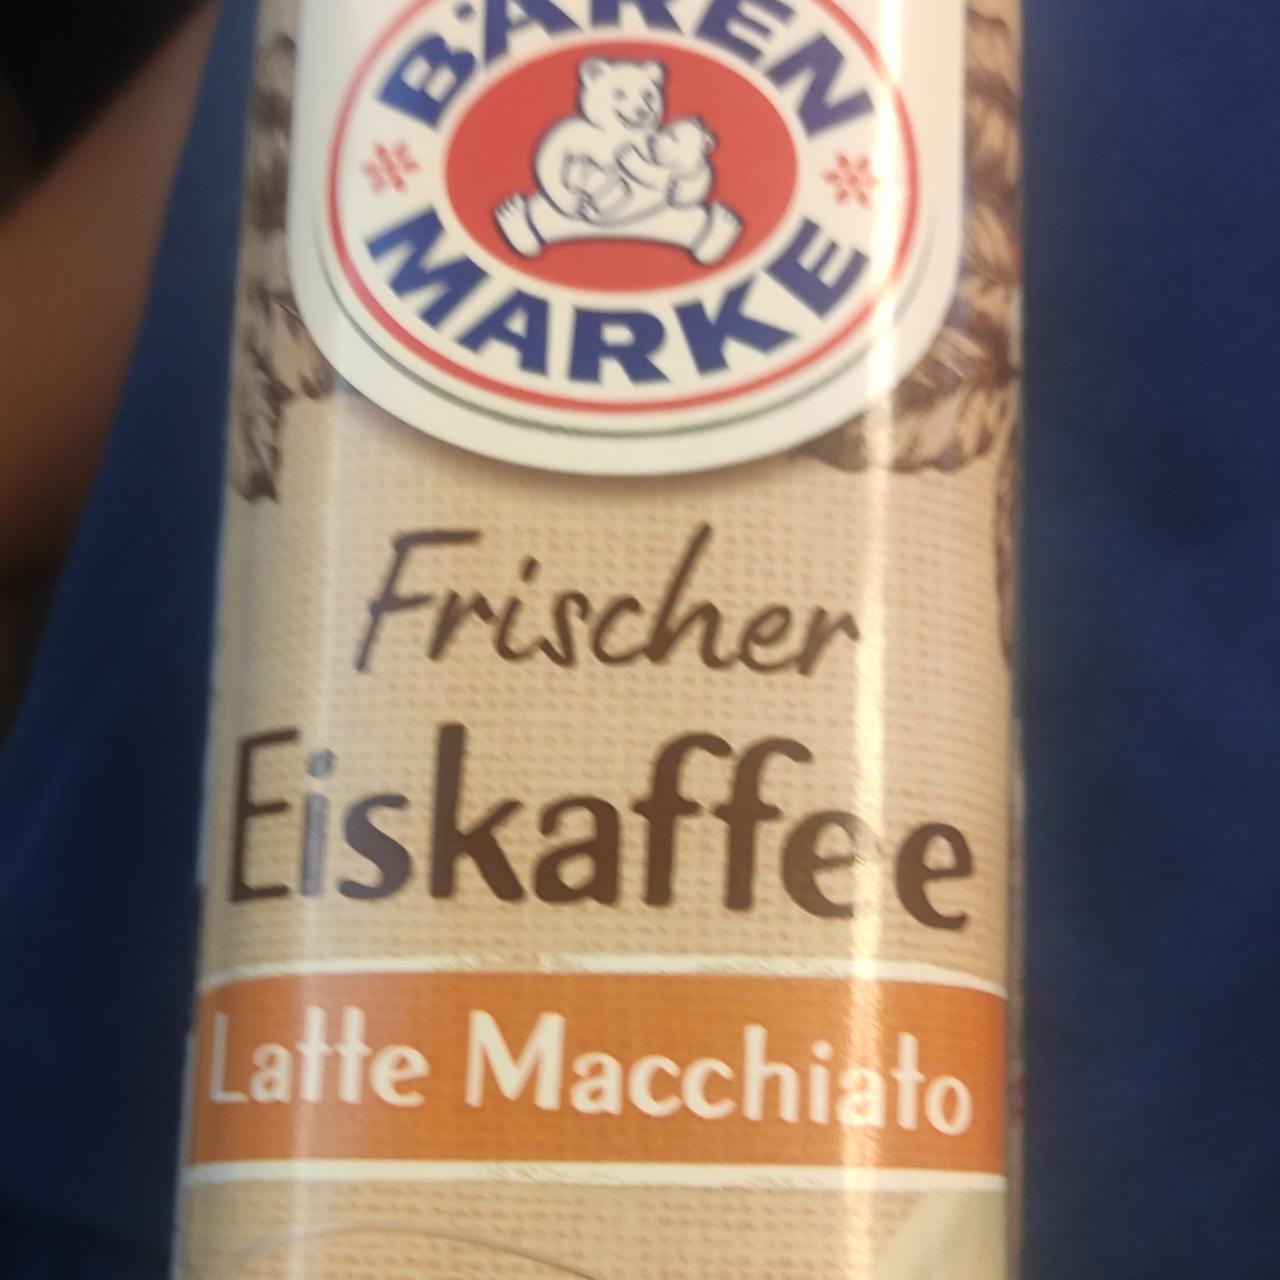 Фото - Кофе Frische Eiskaffee Latte Macchiato Bären Marke